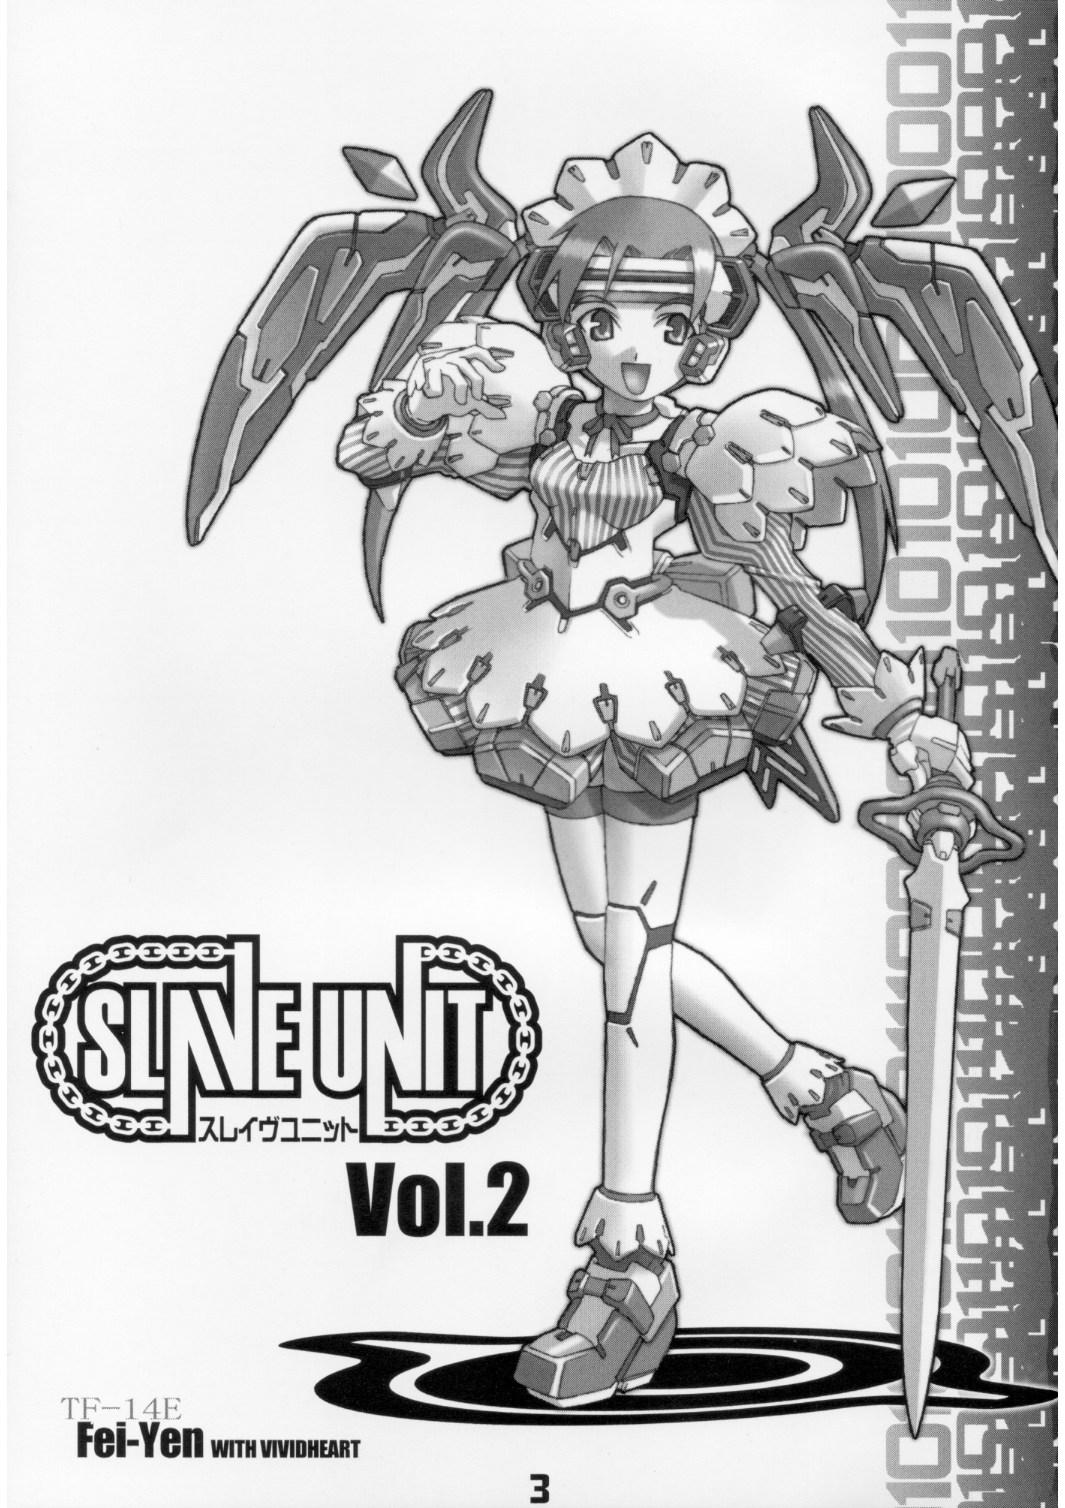 Desperate Slave Unit Vol.2 - Dead or alive Darkstalkers Sakura taisen Devil may cry Excel saga Australian - Page 2